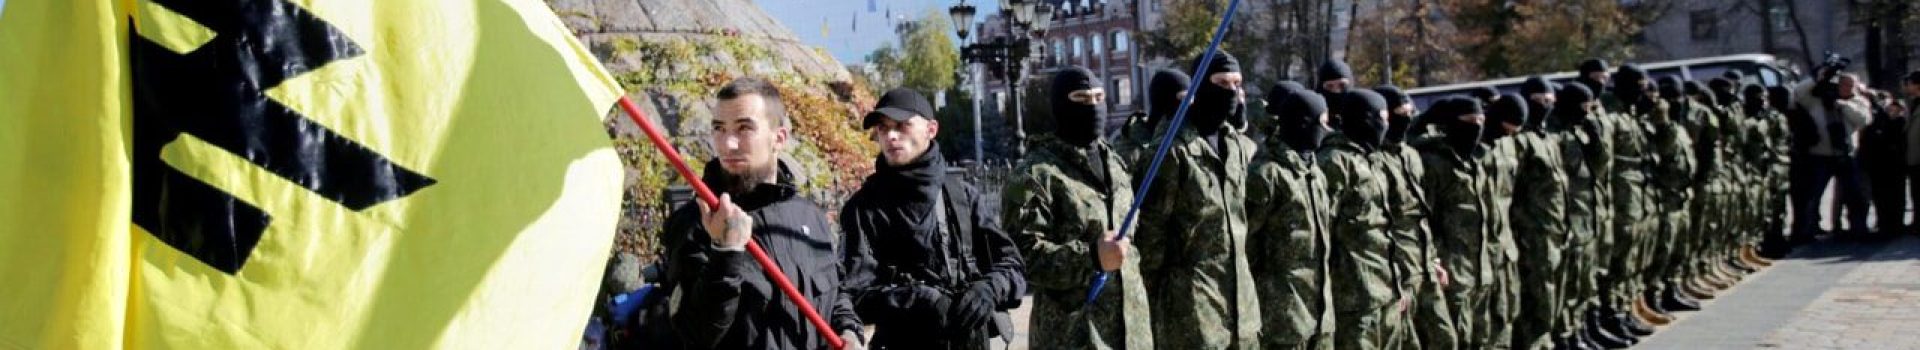 O batalhão neonazista da Ucrânia Azov